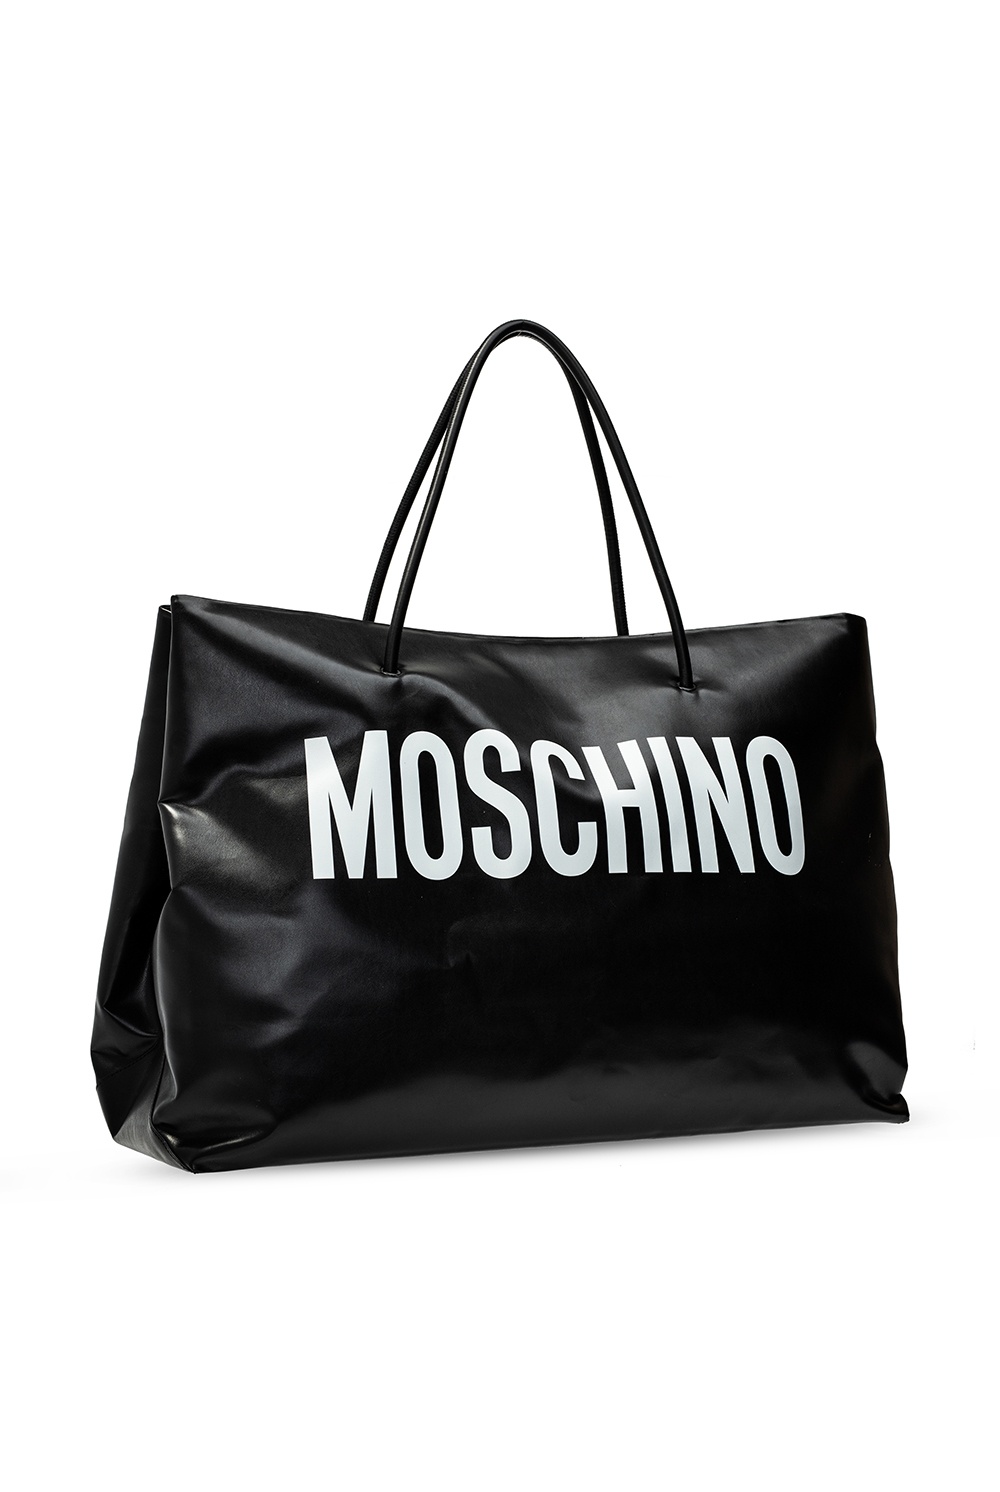 moschino shopper bag